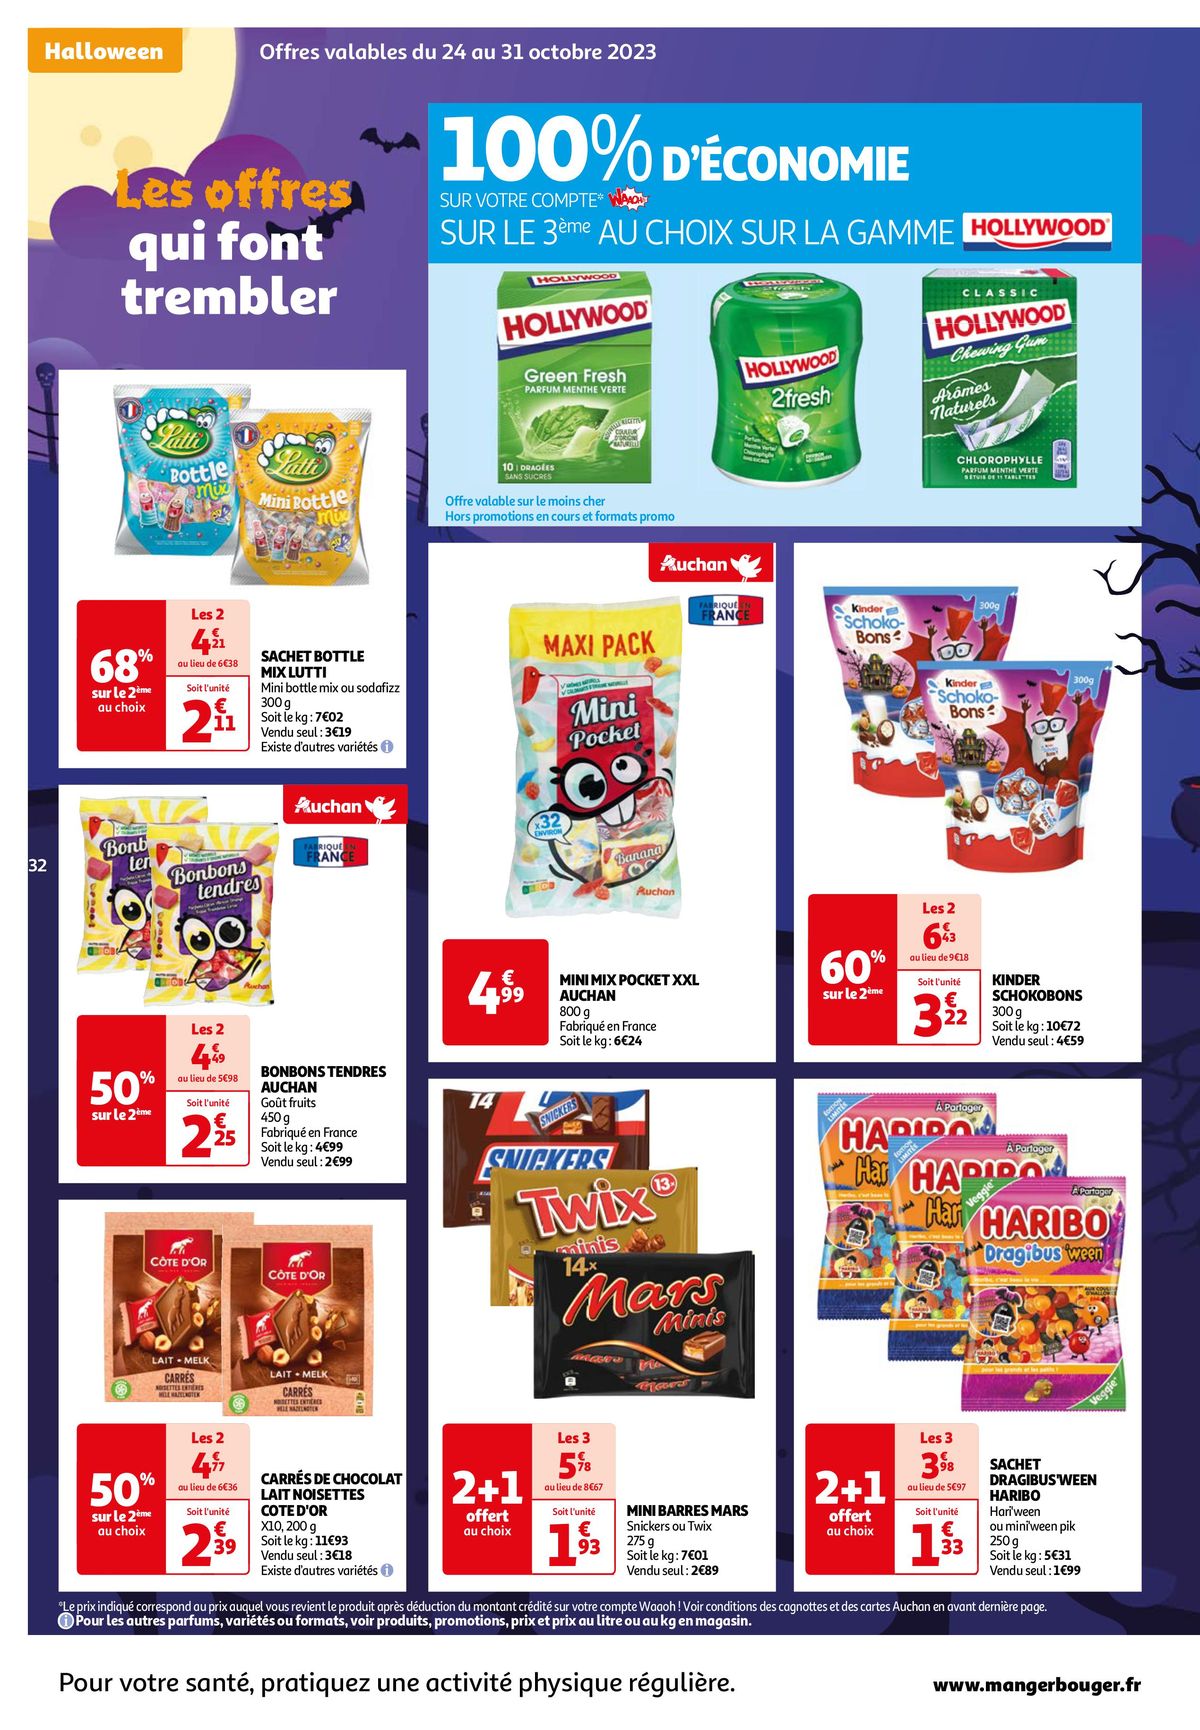 Catalogue 25 jours Auchan : à vos marques, prêts, promos !, page 00032